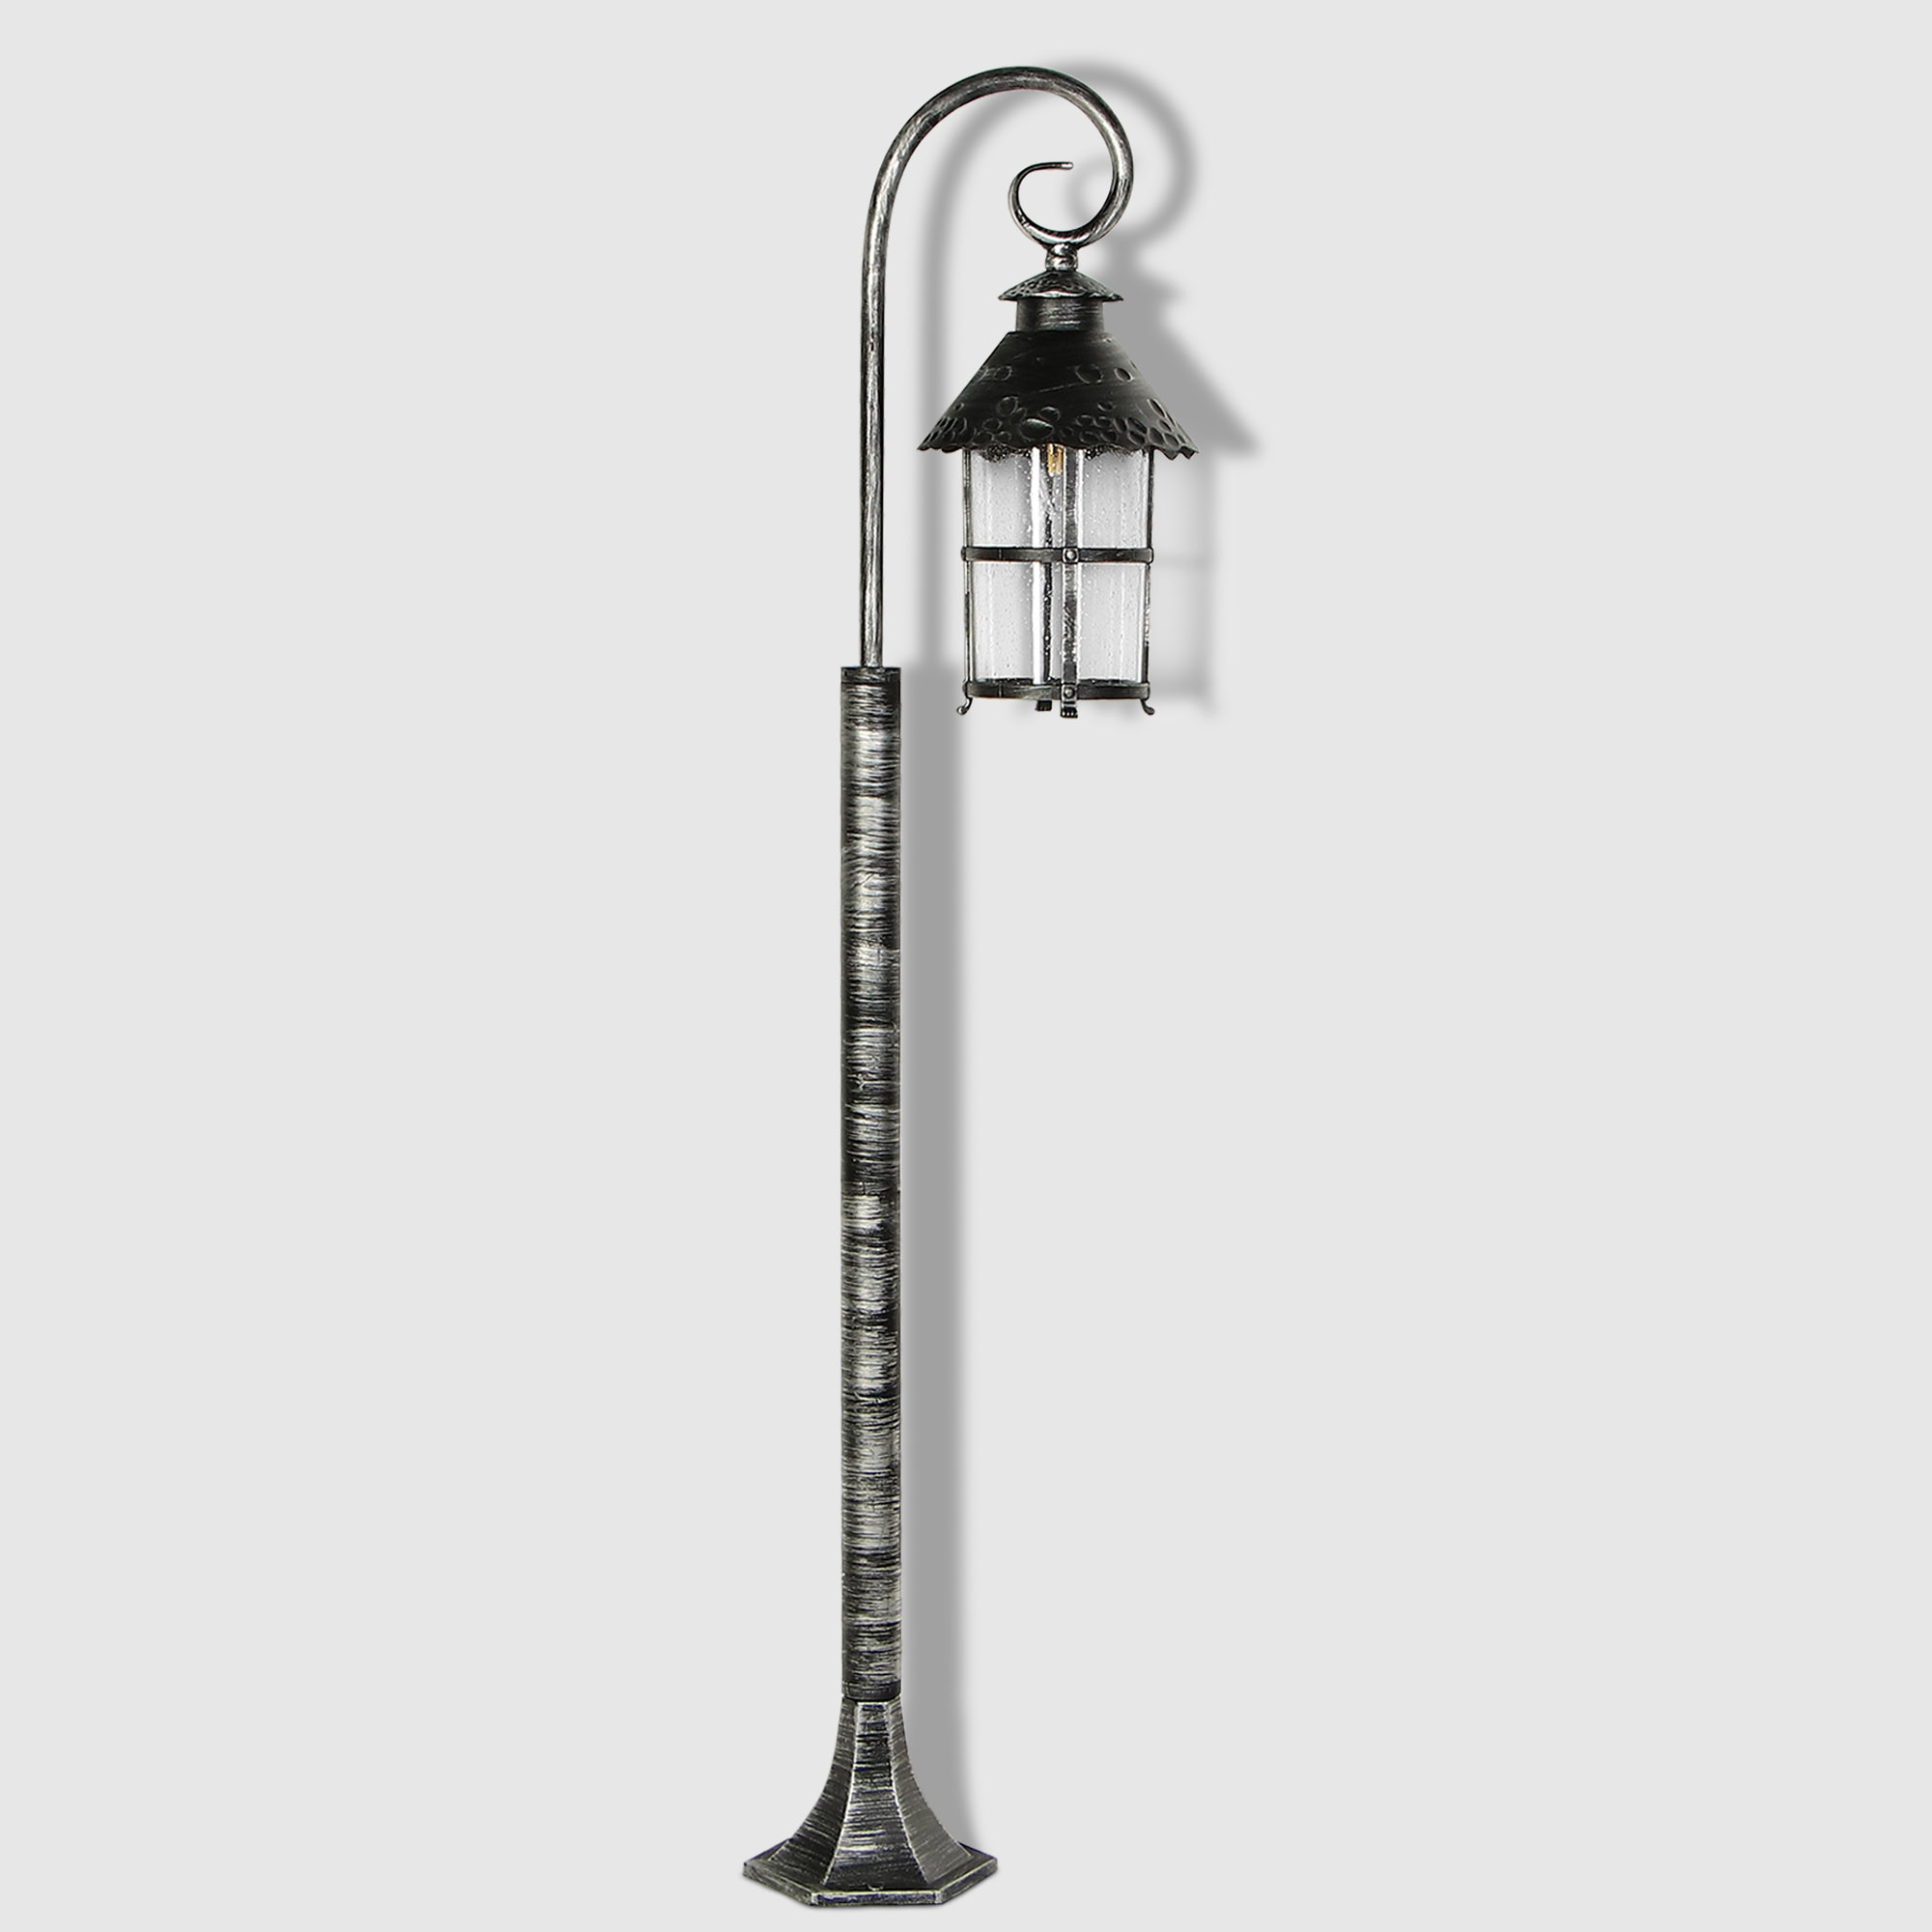 Светильник садовый Amber Lamp 8737 напольный IP23 E27 100Вт, чёрное серебро